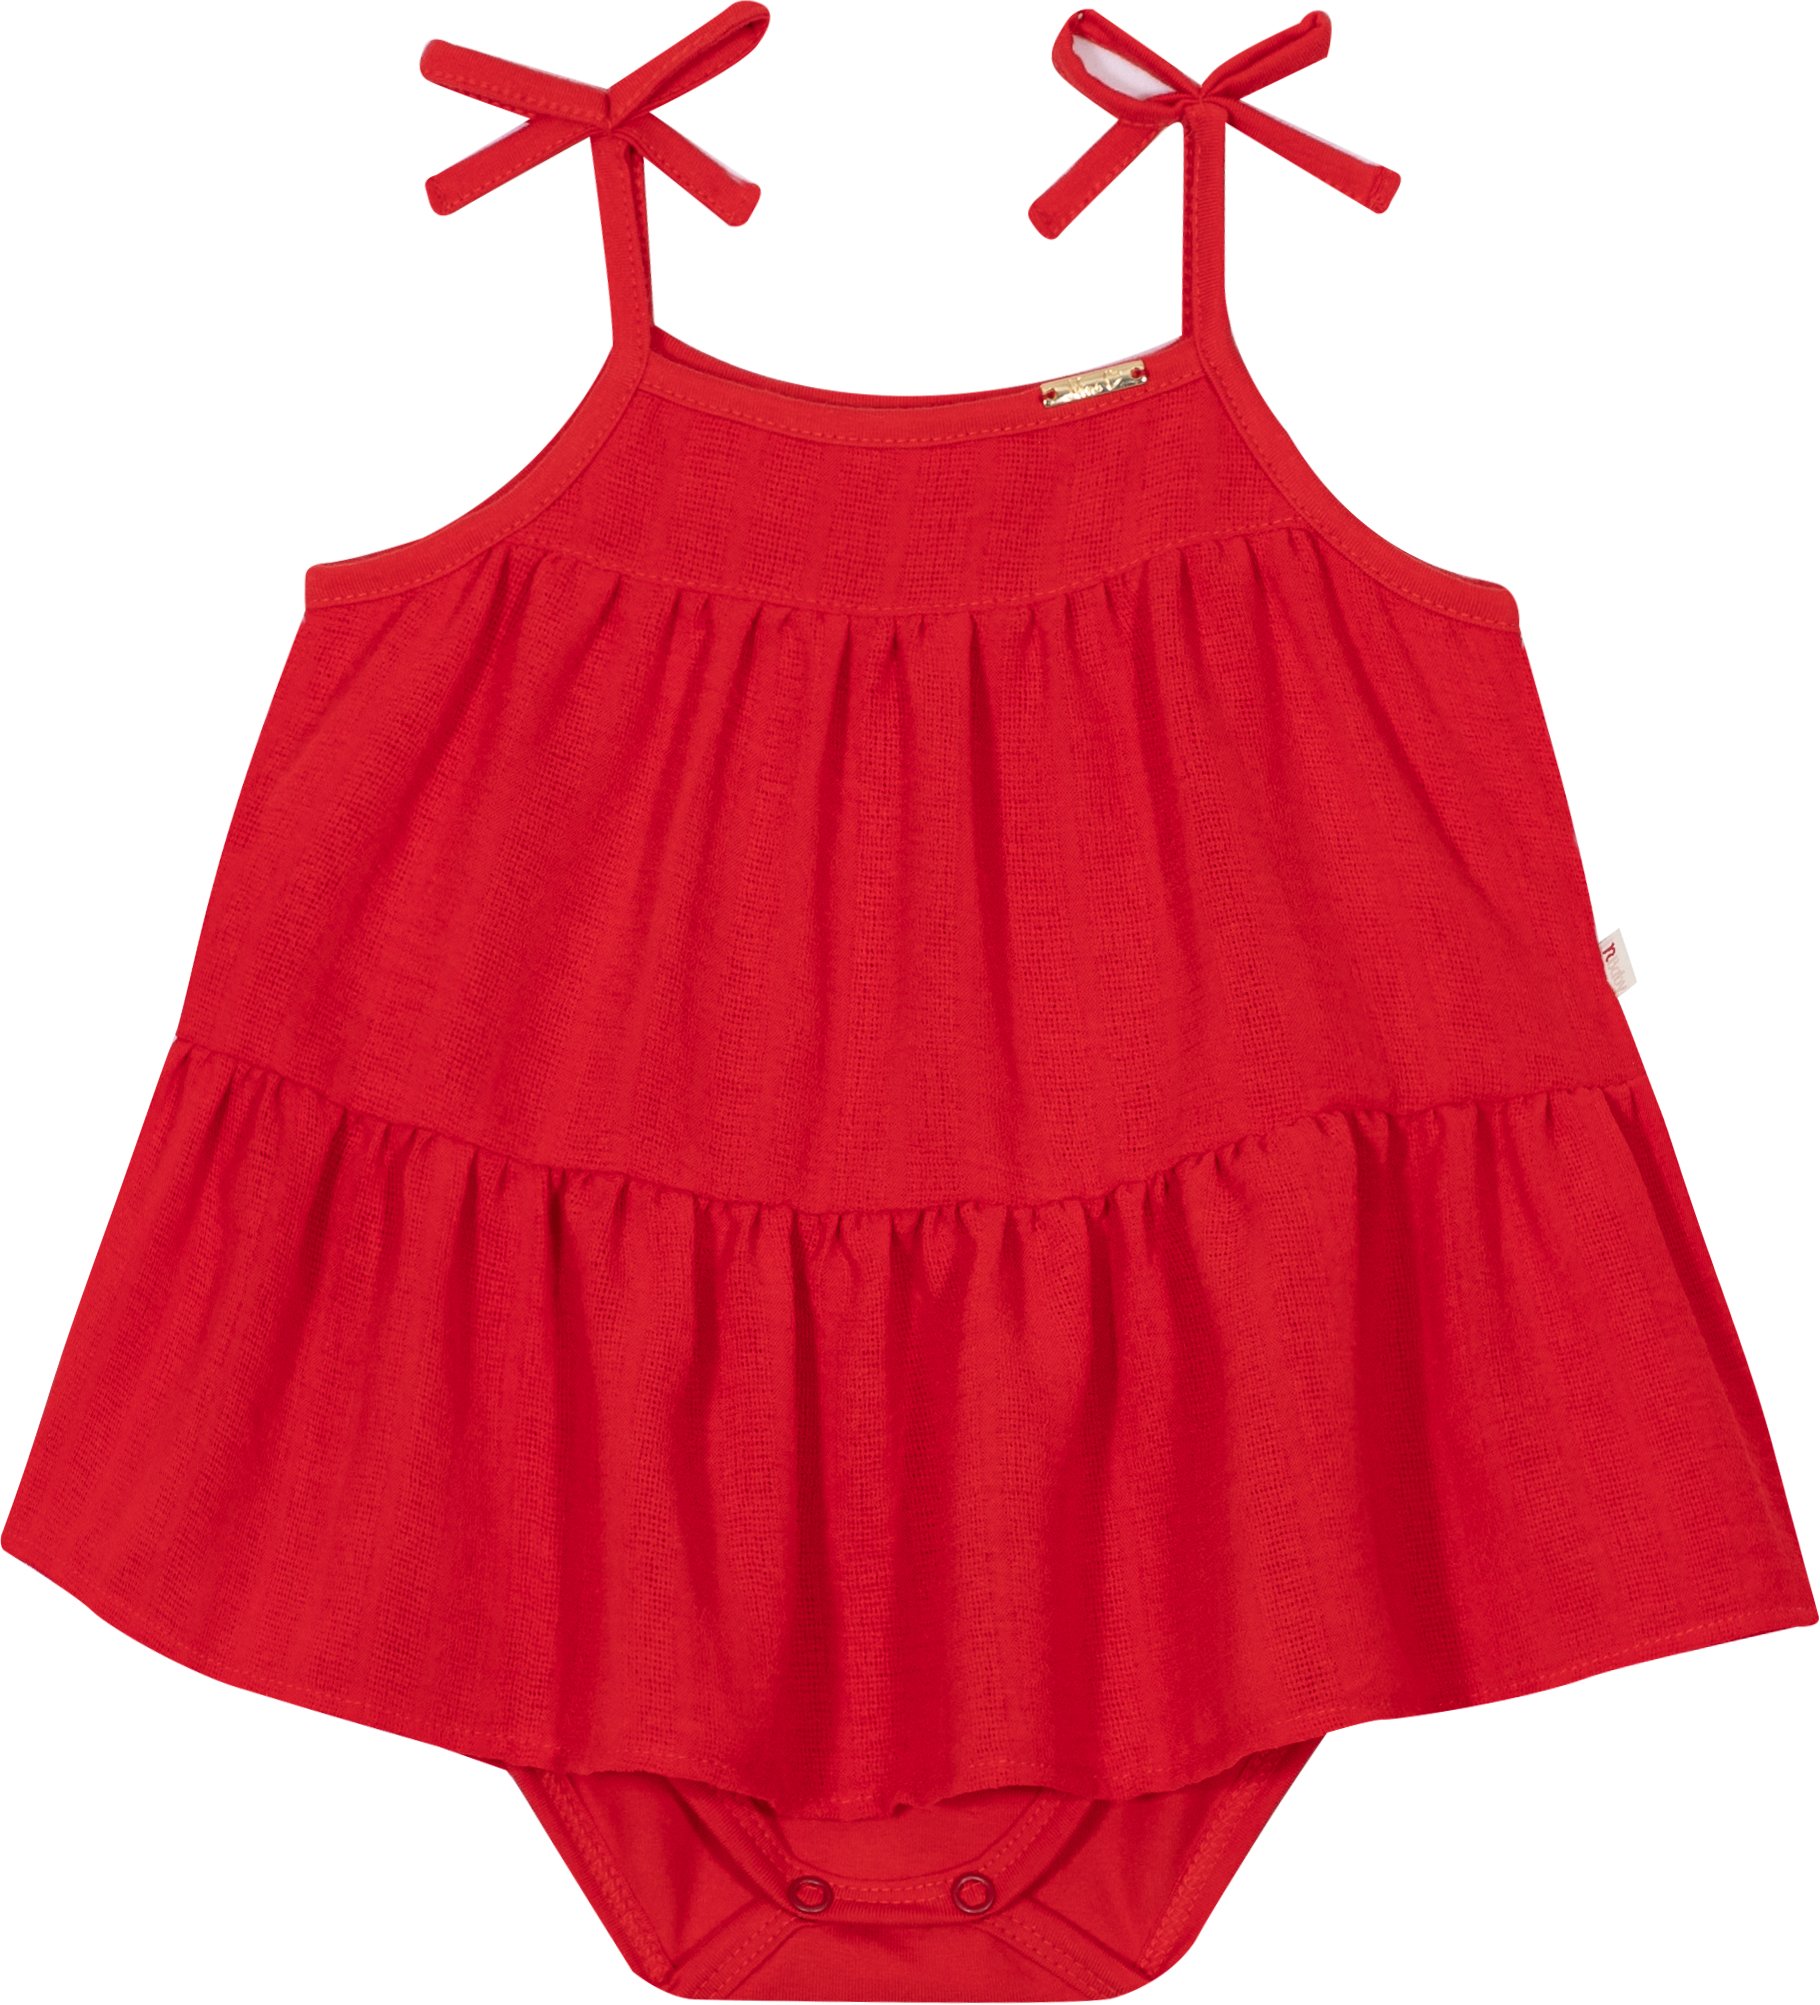 Body Vestido em Cotton e Tecido Jacquard Vermelho - Nini Bambini